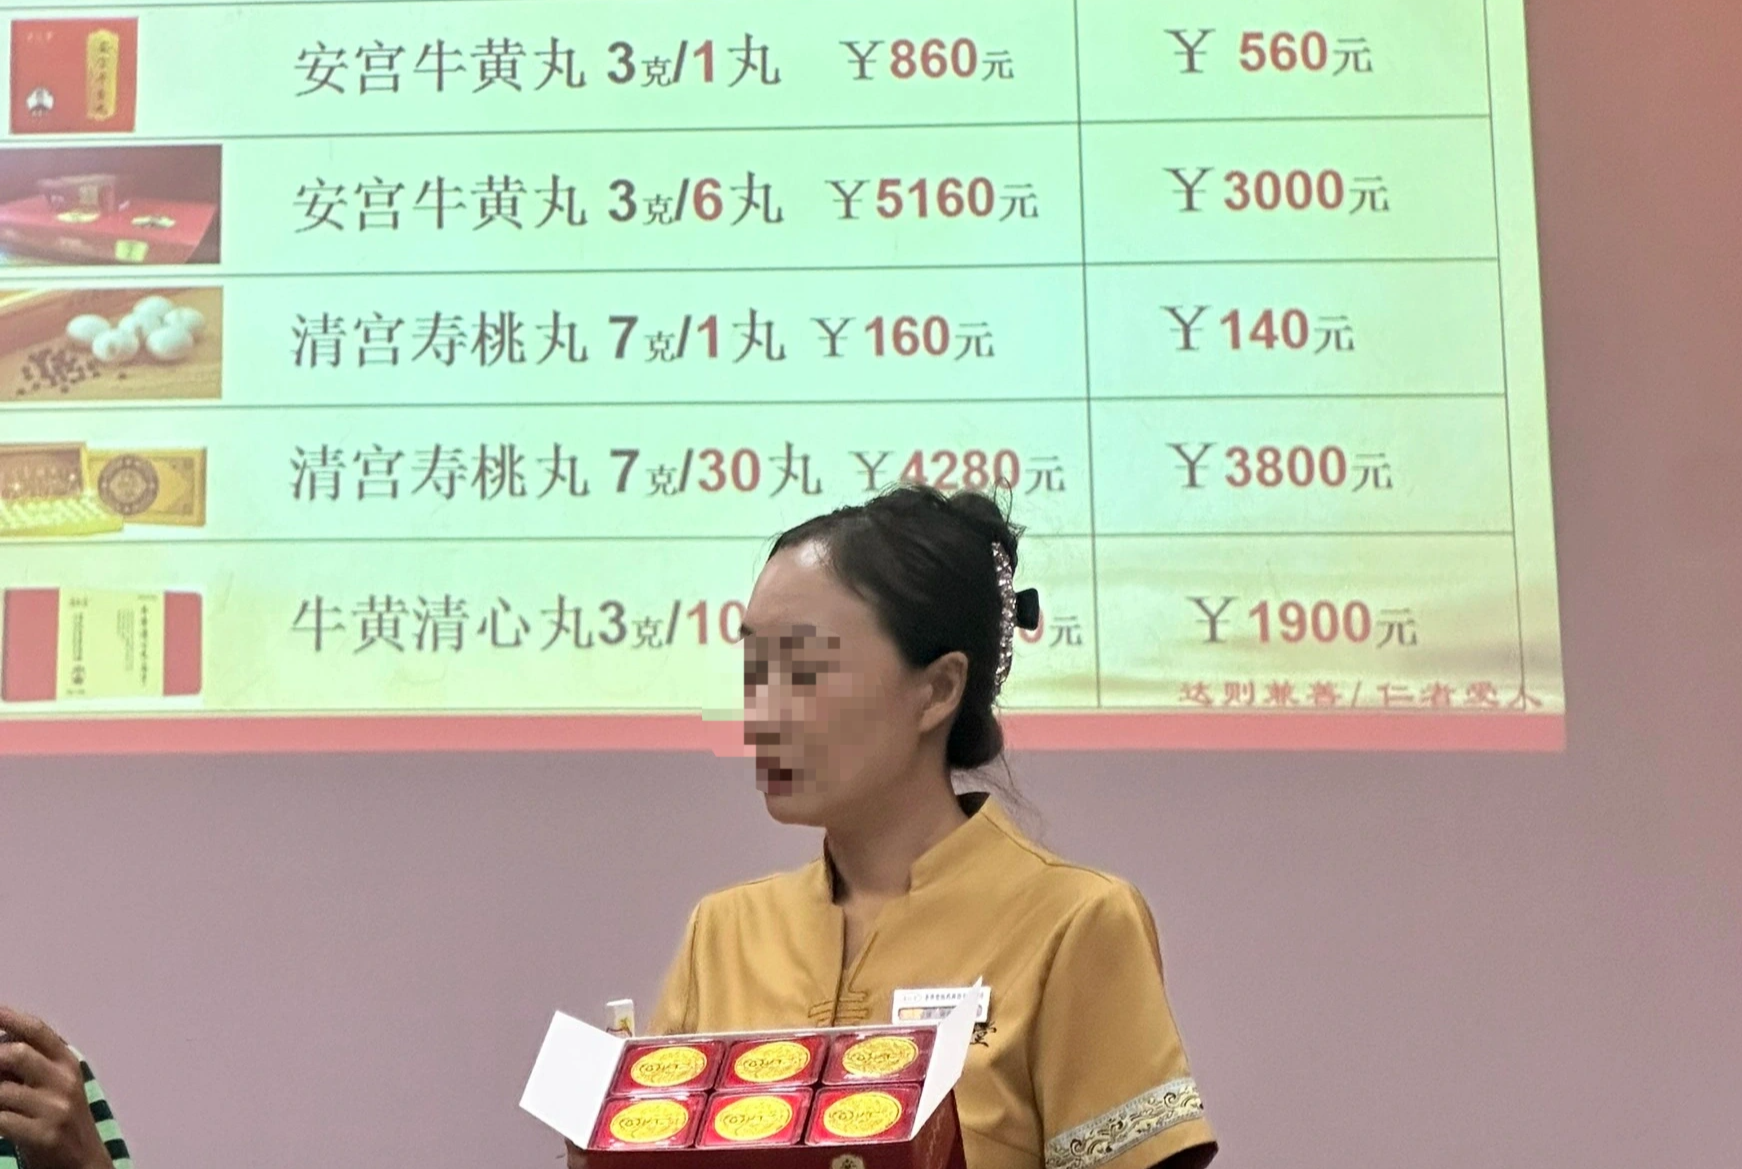 View - Bi hài tour giá rẻ Trung Quốc: Ăn cơm sinh viên, bị "bỏ bom" ở sân bay | Báo Dân trí